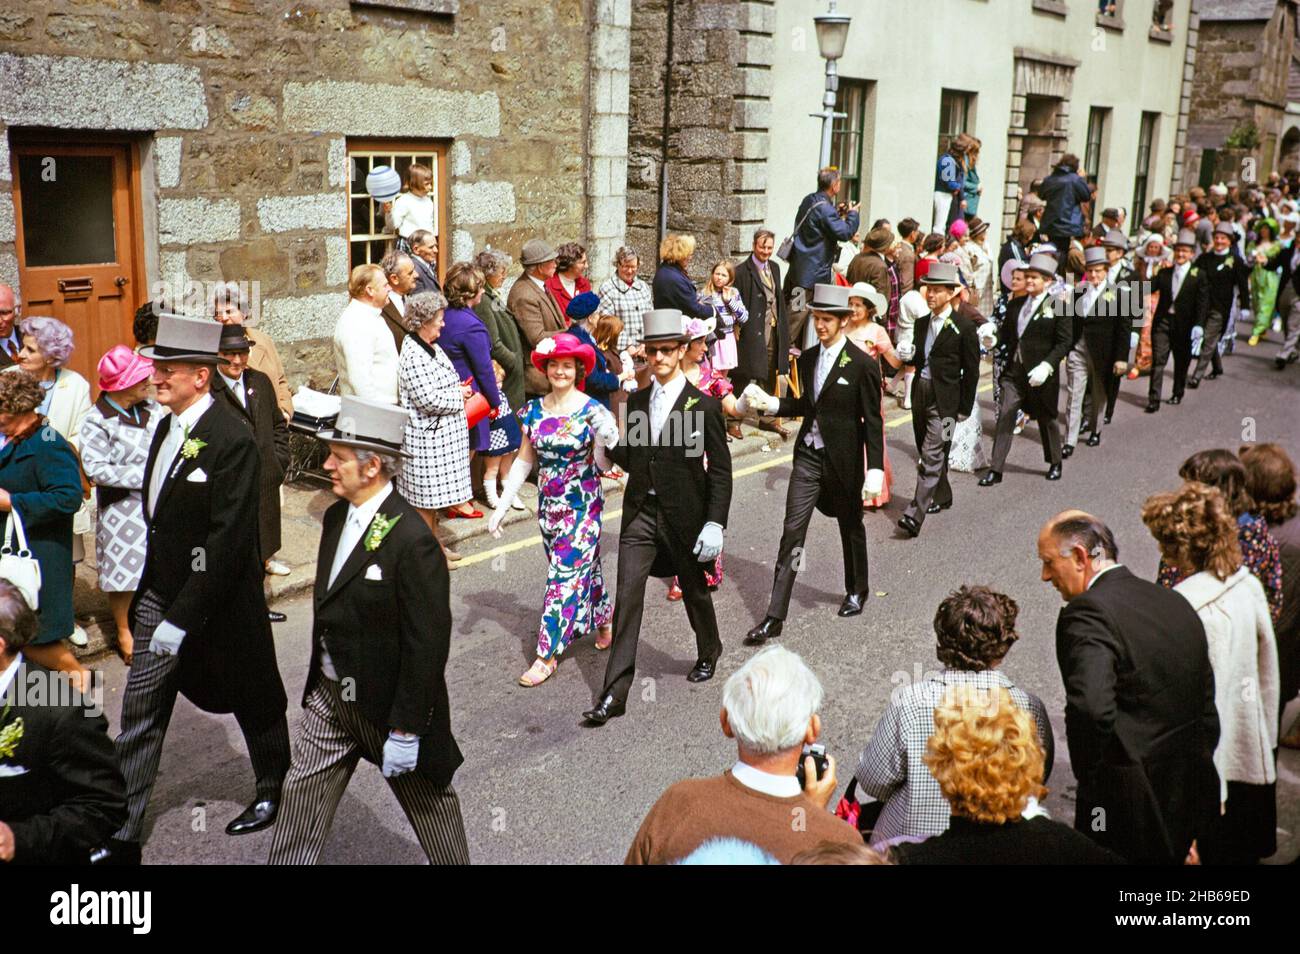 Flora Day, Helston, Cornwall, Angleterre, Royaume-Uni 1973 - la foule regarde les couples jouer la danse Furry dans les rues de la ville Banque D'Images